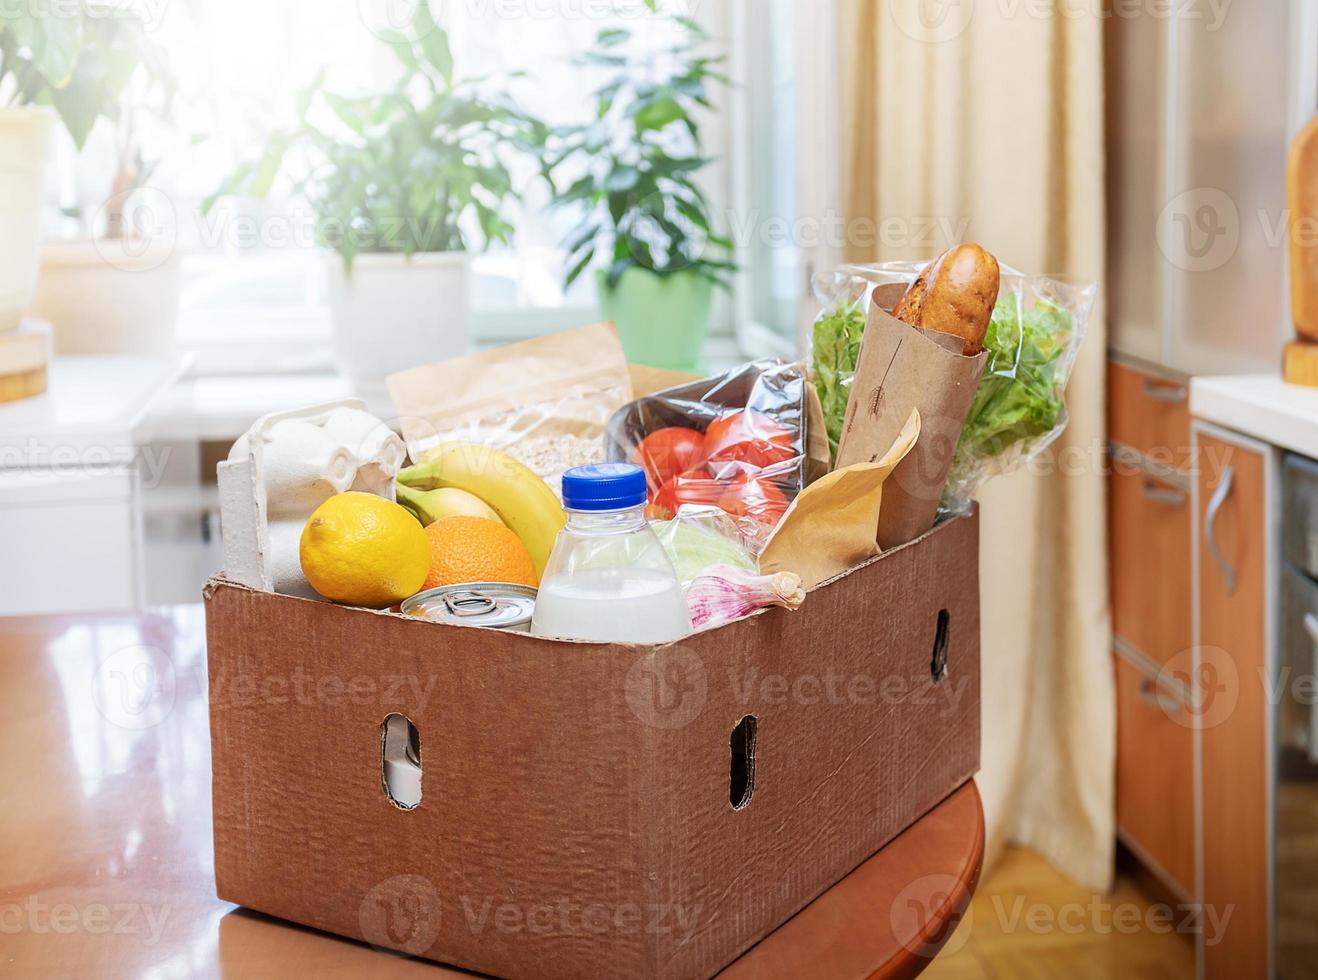 karton doos met voedsel producten Aan houten tafel in keuken interieur tegen venster met kamerplanten. veilig levering. foto